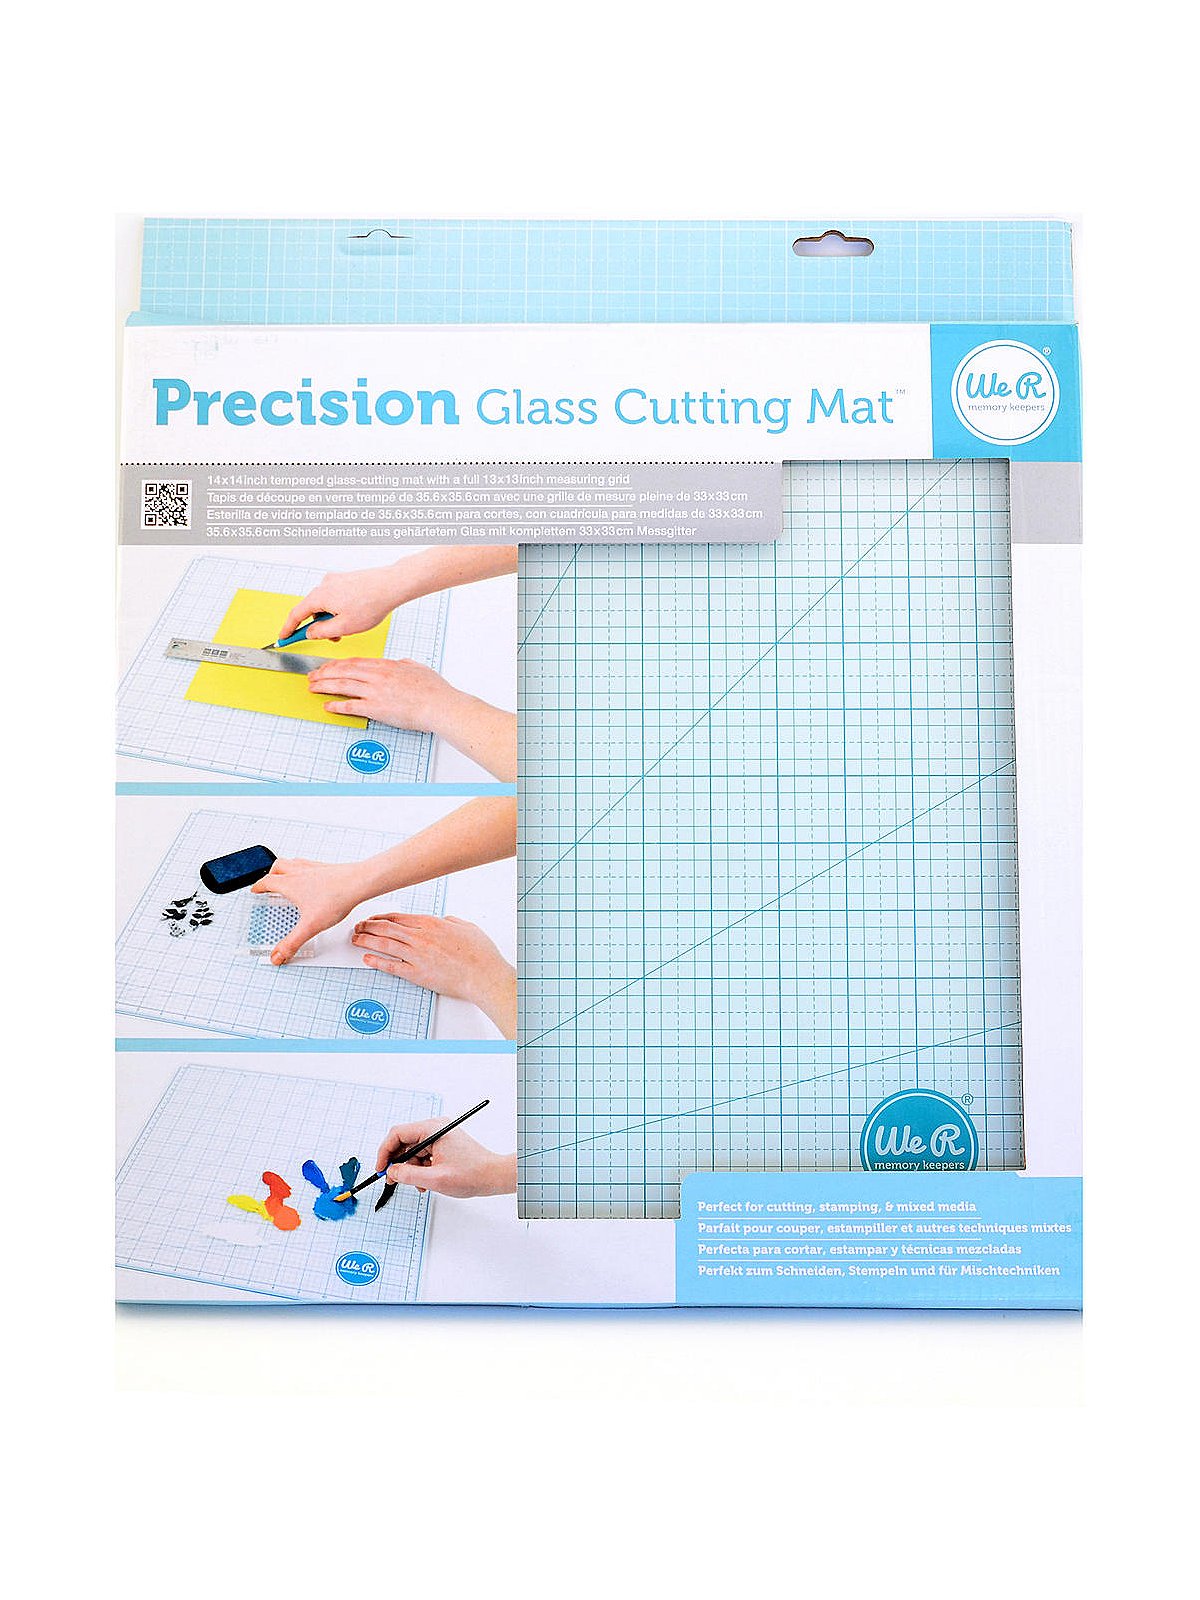 Cutting Board, Grid Crafts, Cutting Mat, Diy Tool